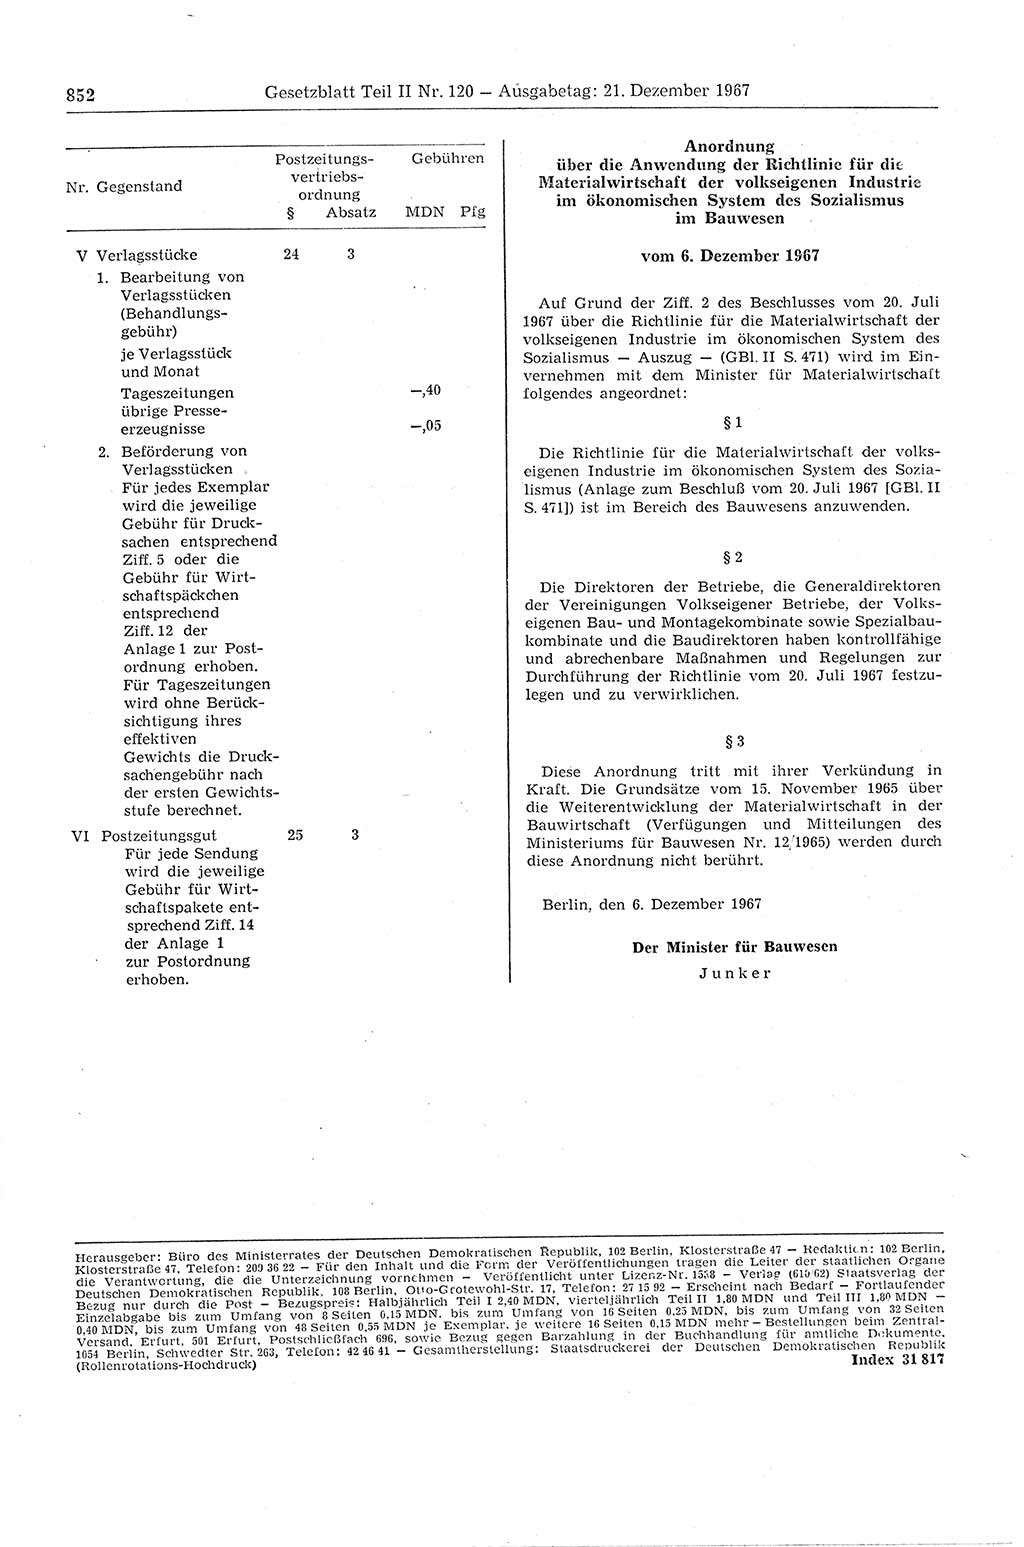 Gesetzblatt (GBl.) der Deutschen Demokratischen Republik (DDR) Teil ⅠⅠ 1967, Seite 852 (GBl. DDR ⅠⅠ 1967, S. 852)